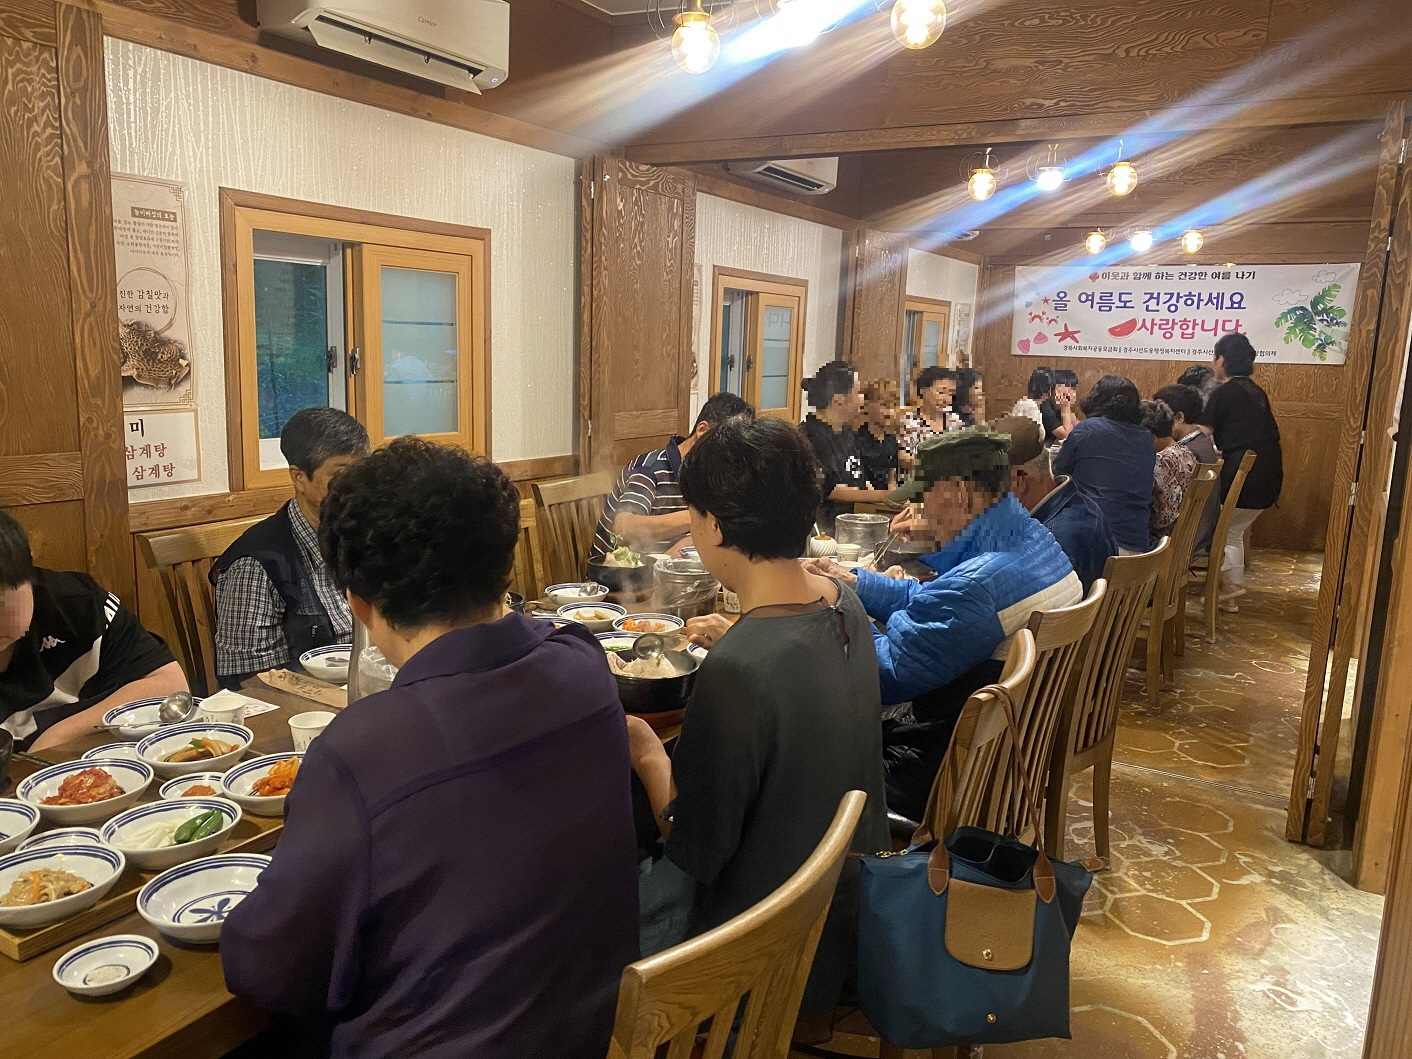 4. 선도동 이웃애복지단 위원들과 대상자들이 저녁식사를 함께하고 있다.jpg